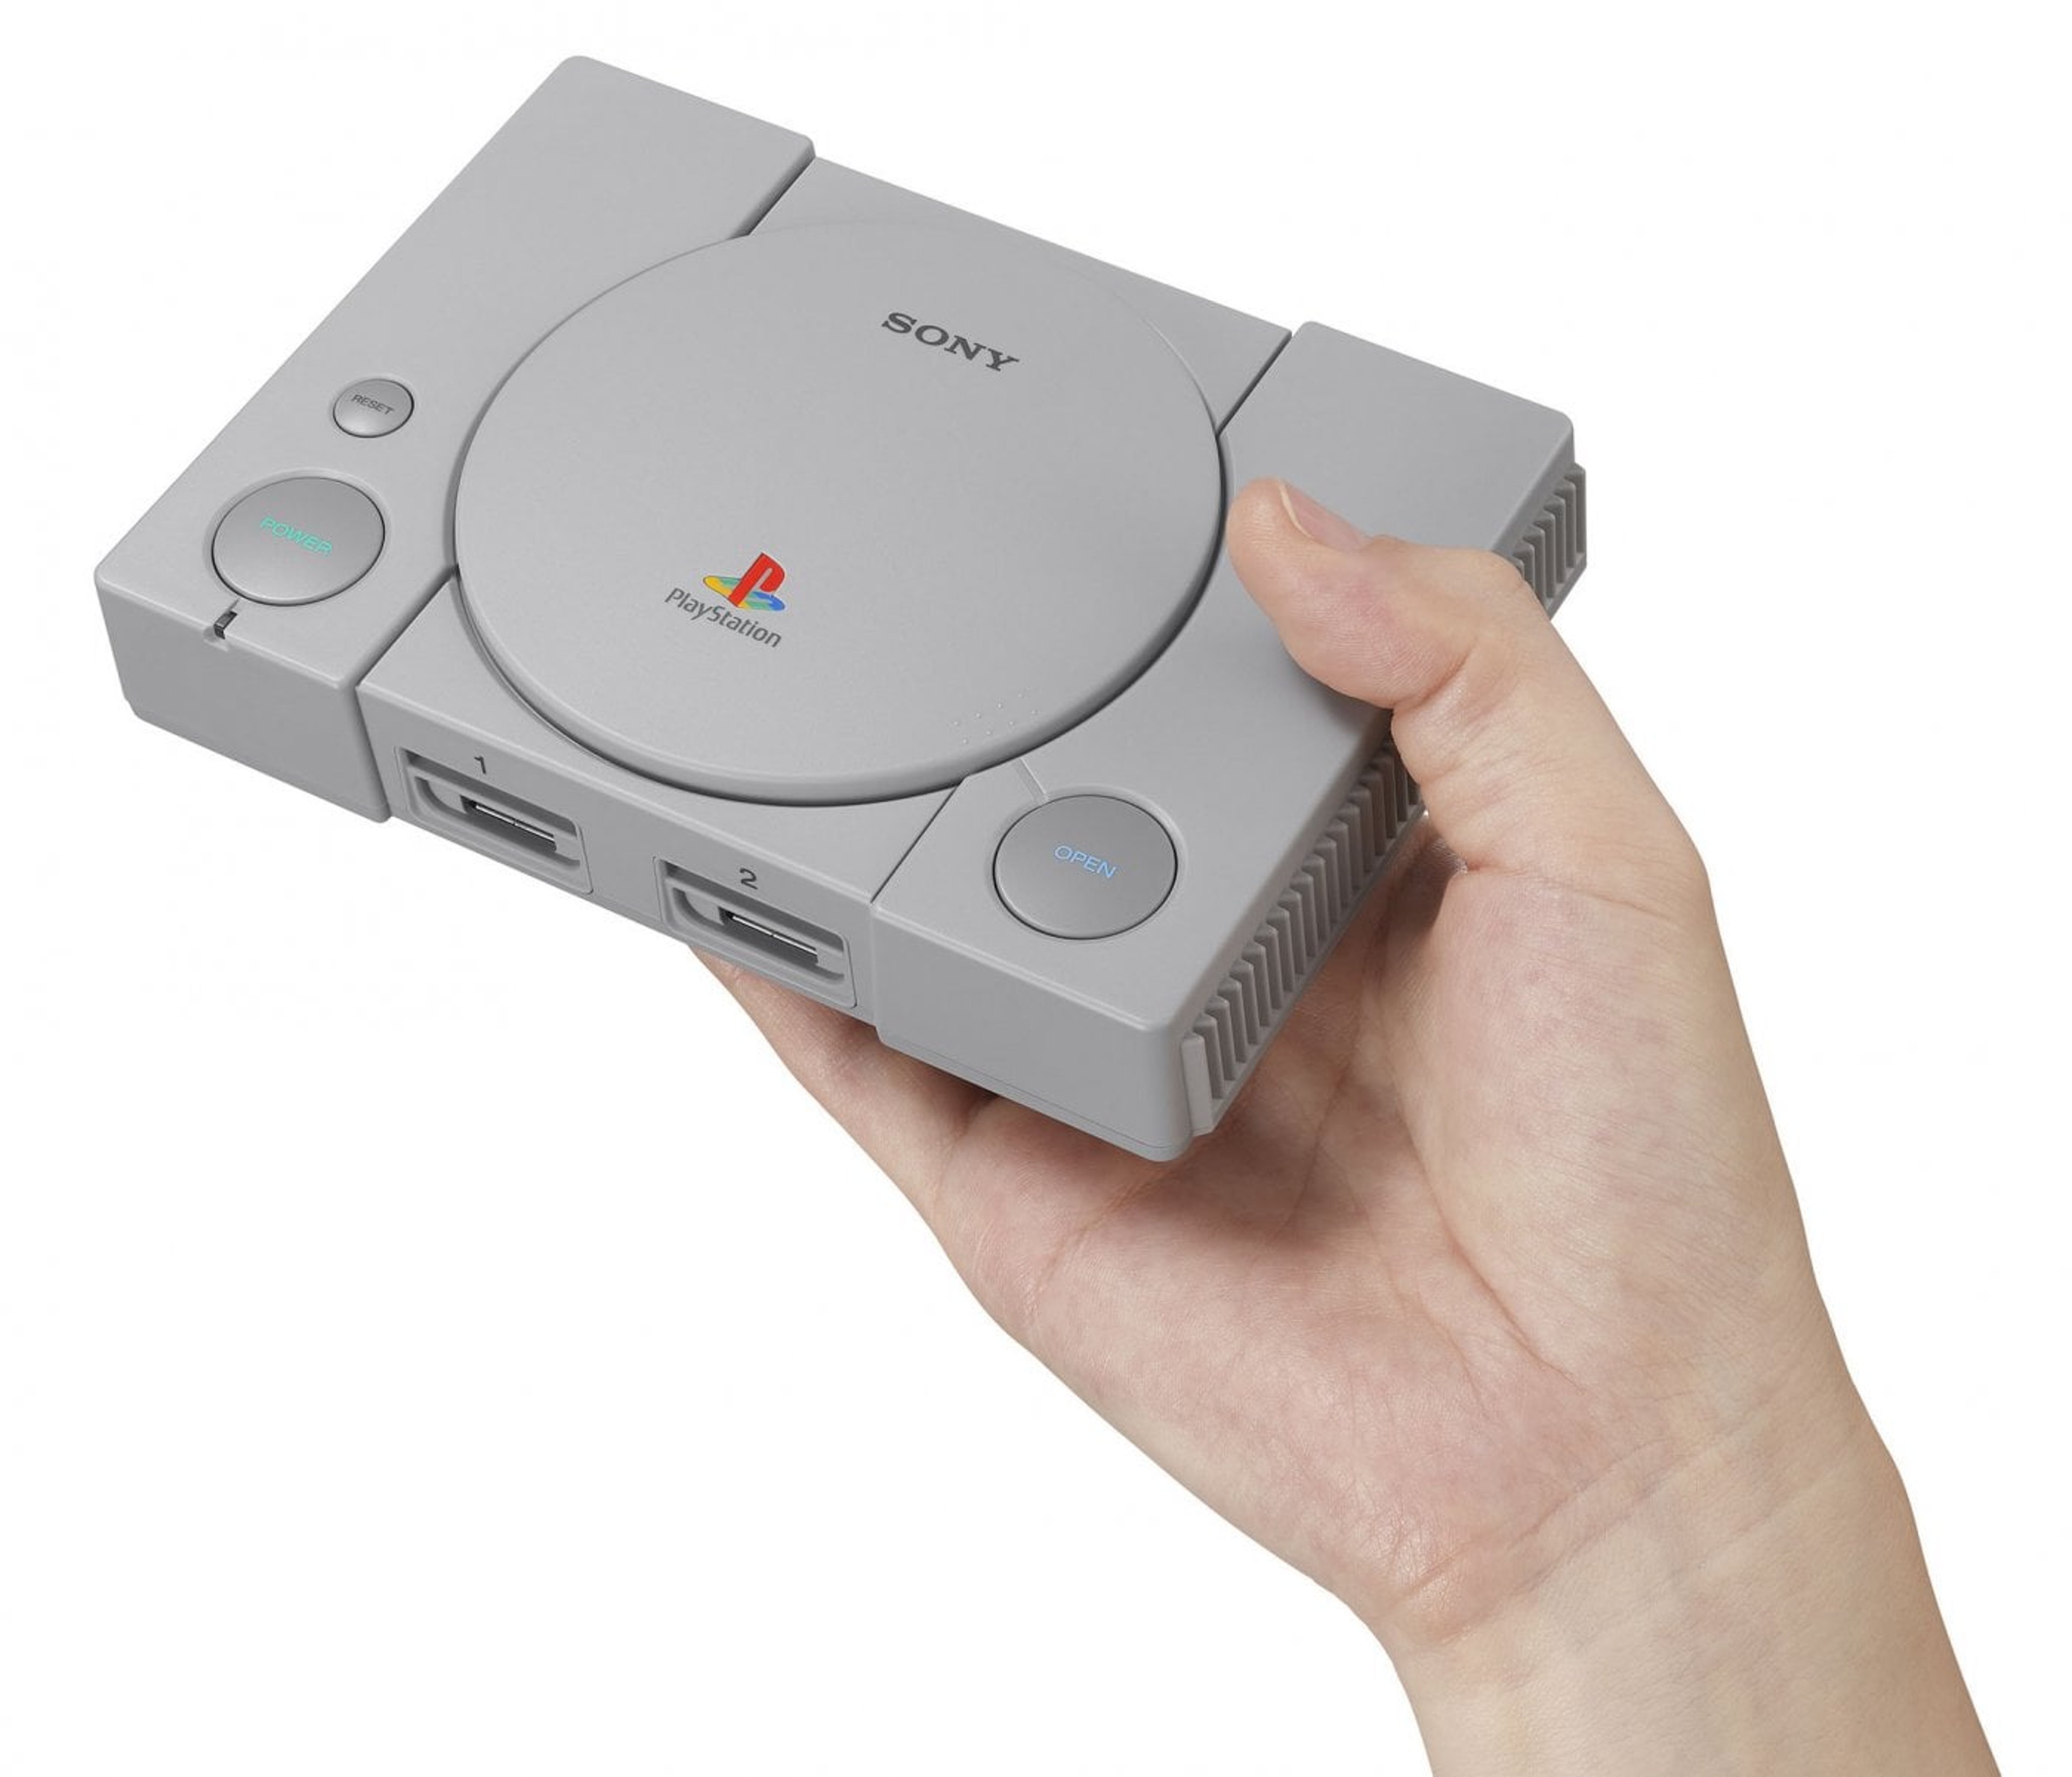 Sony riporta alla luce la sua prima console; Playstation Classic in uscita il 3 dicembre 2018.